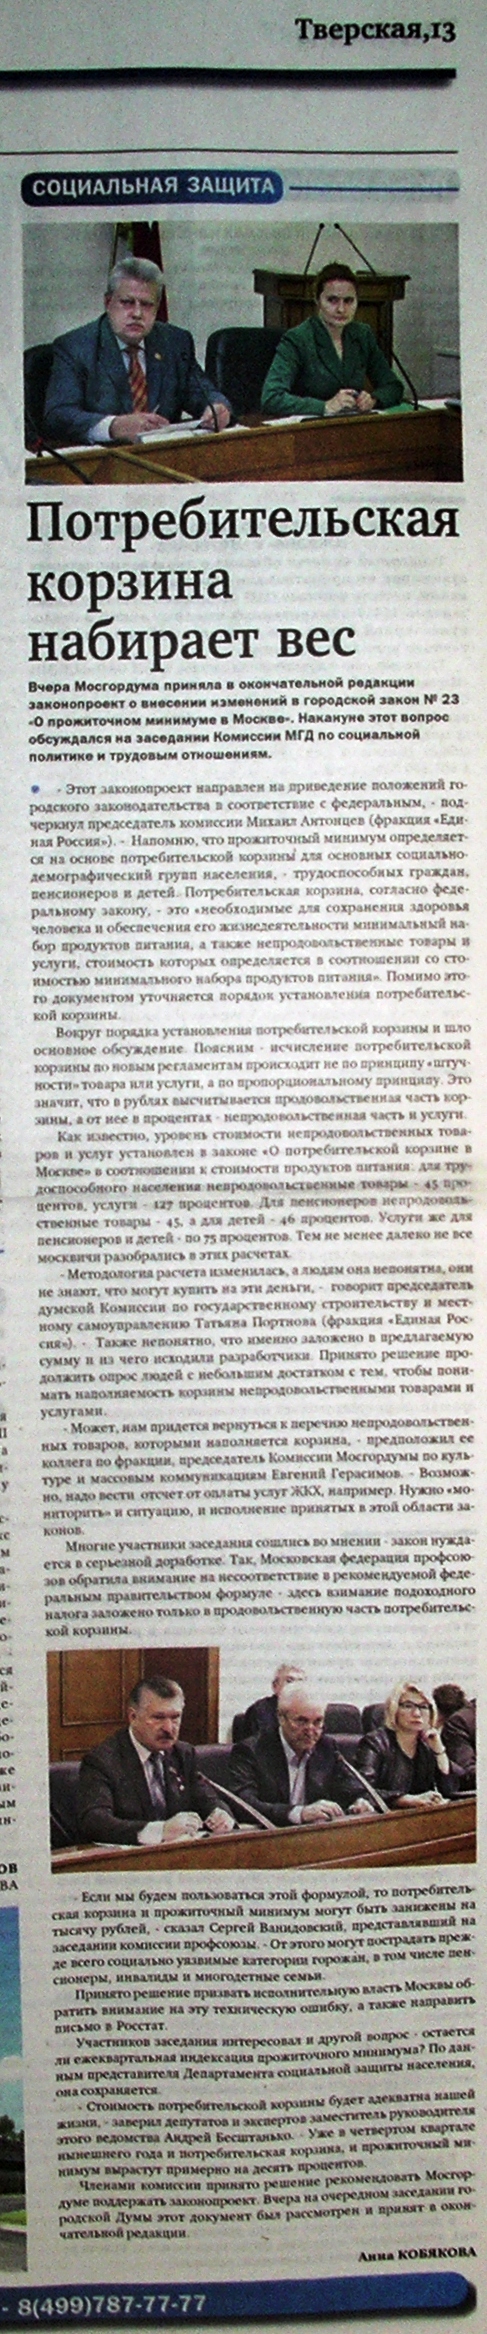 «Потребительская корзина набирает вес» Газета «Тверская, 13»  № 113 от 19 сентября 2013 года